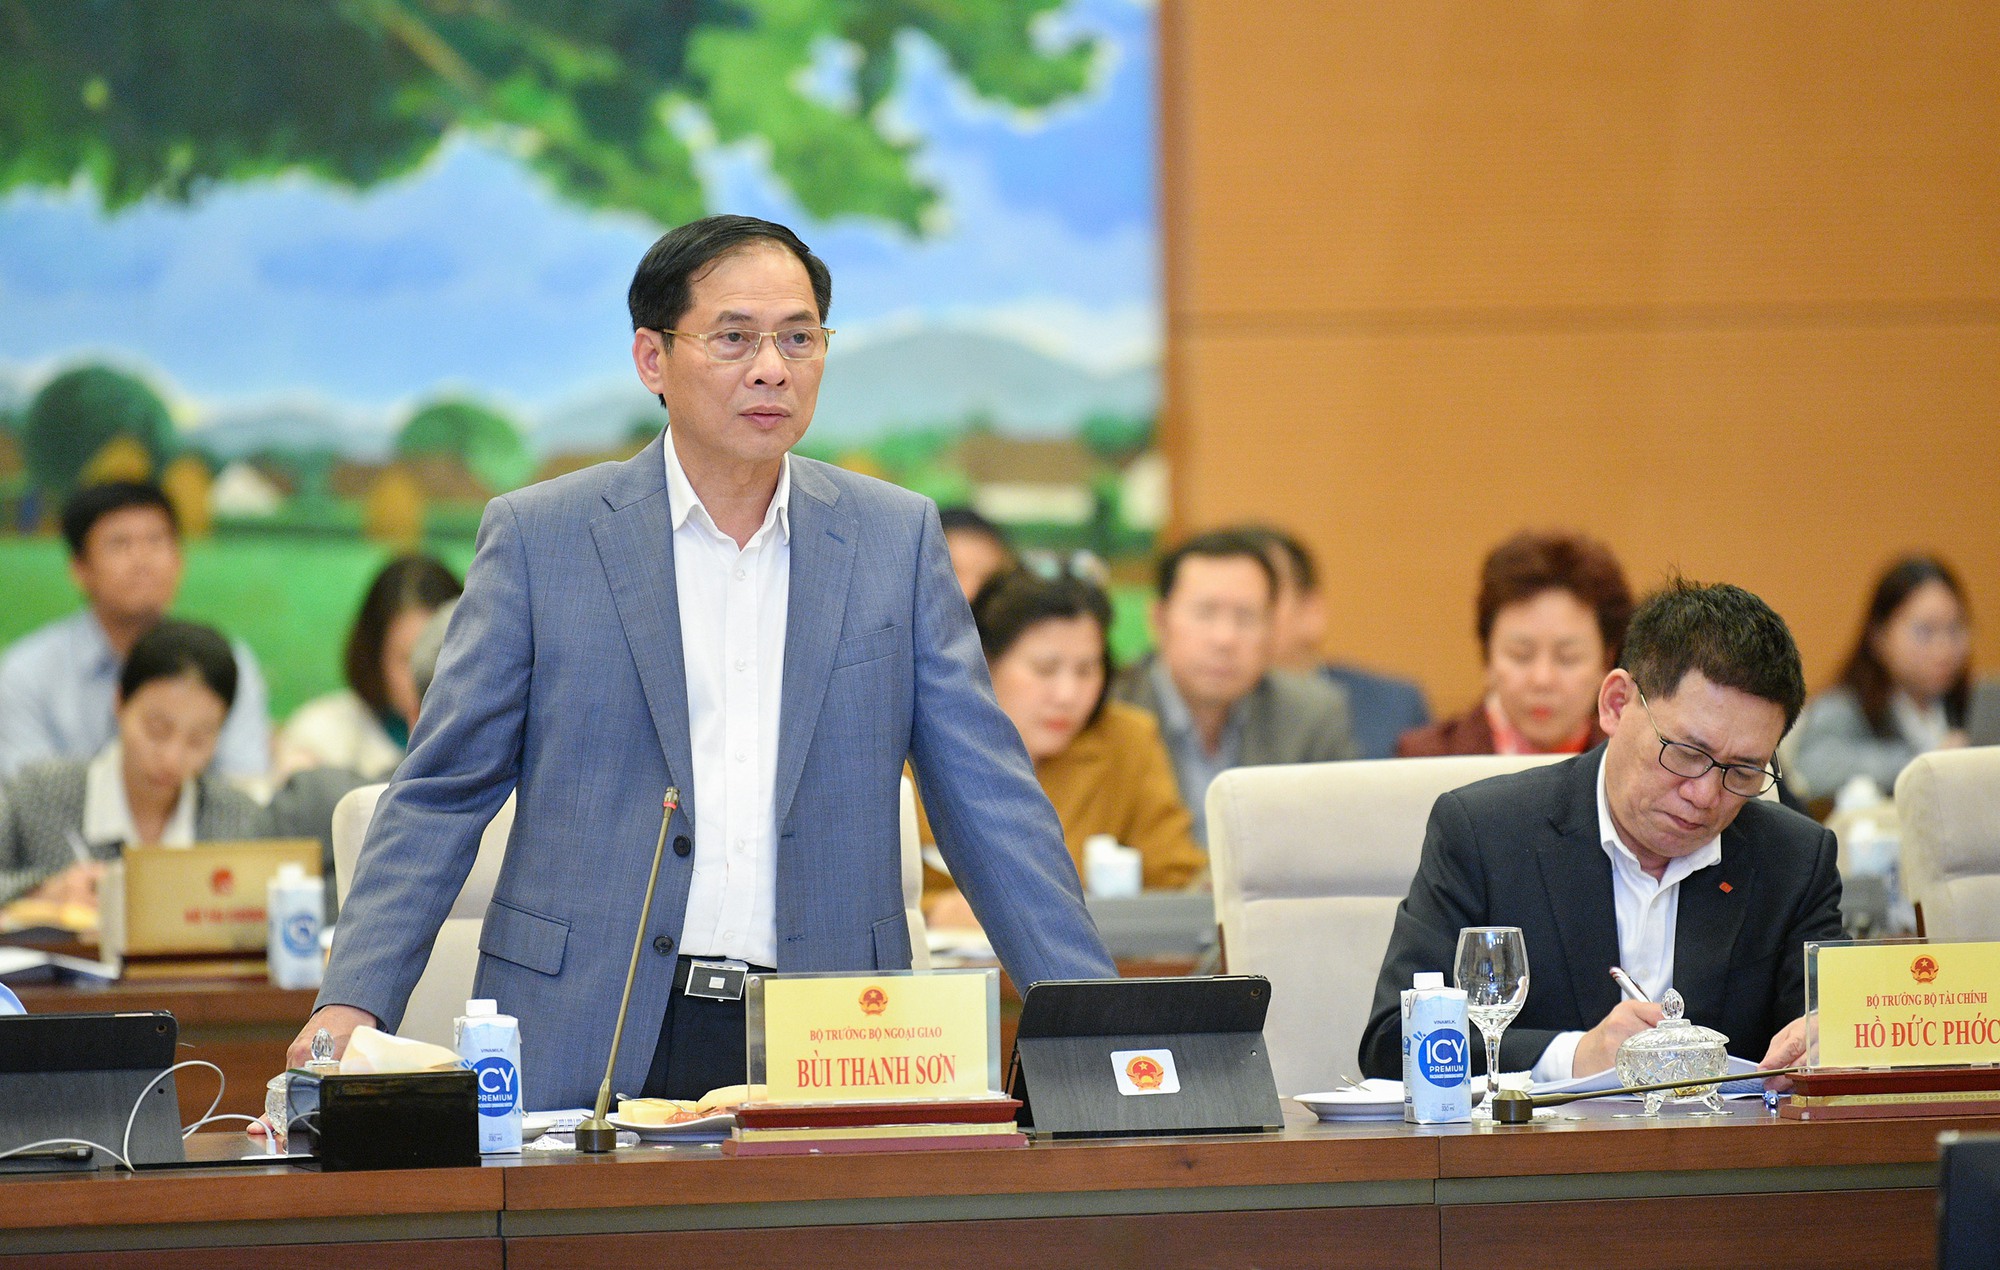 Chất vấn Bộ trưởng Bùi Thanh Sơn công tác bảo hộ công dân; sắp xếp, kiện toàn bộ máy ngoại giao- Ảnh 7.